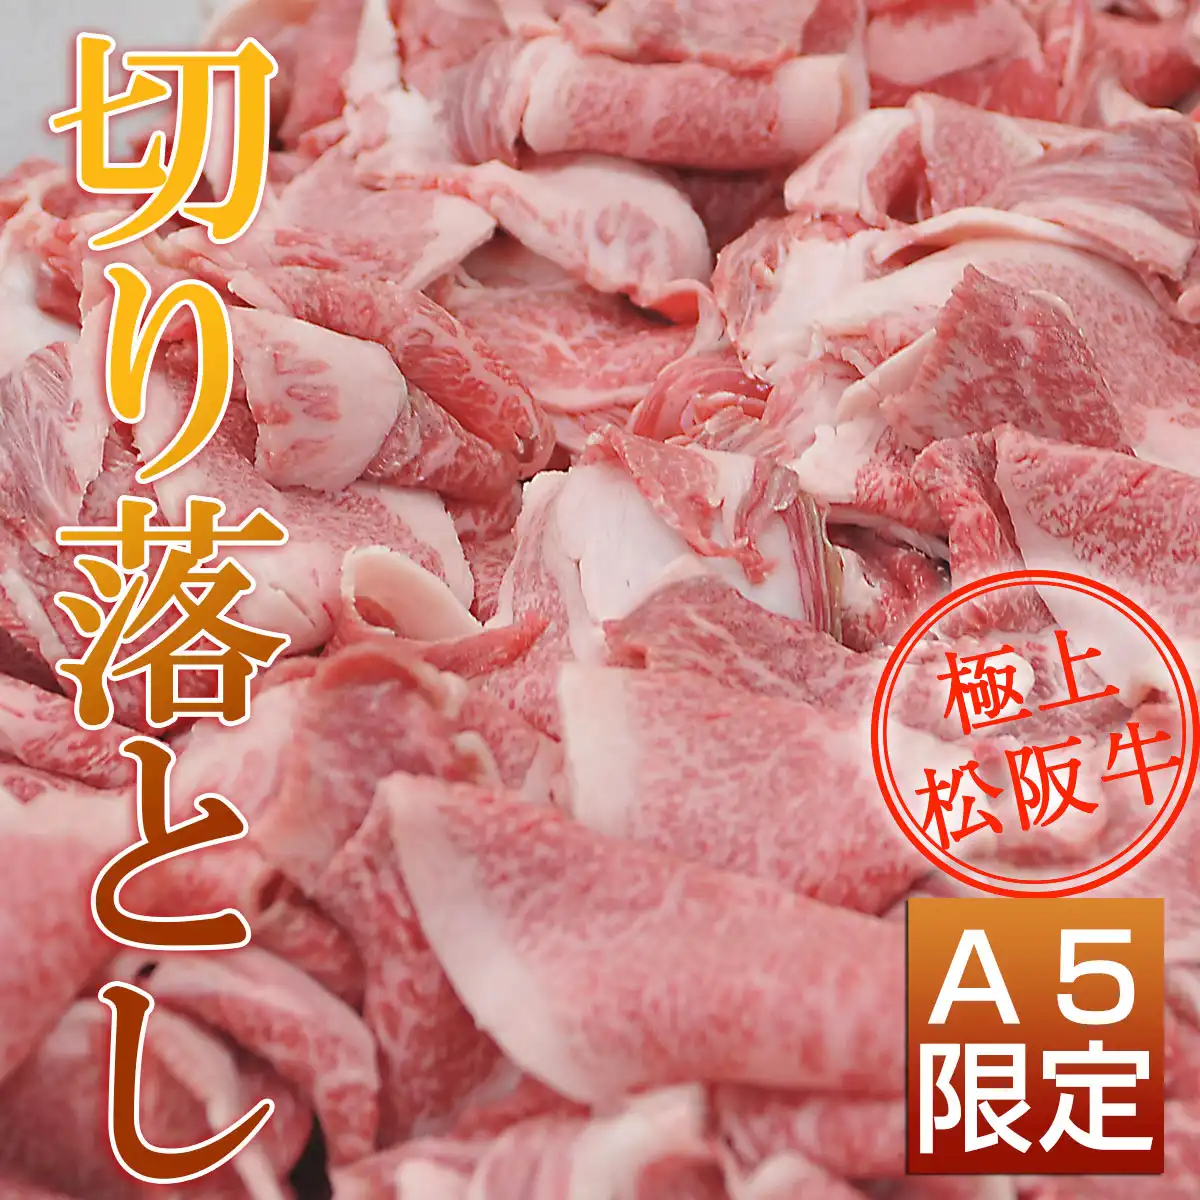 松阪牛特上すき焼き3部位食べ比べ